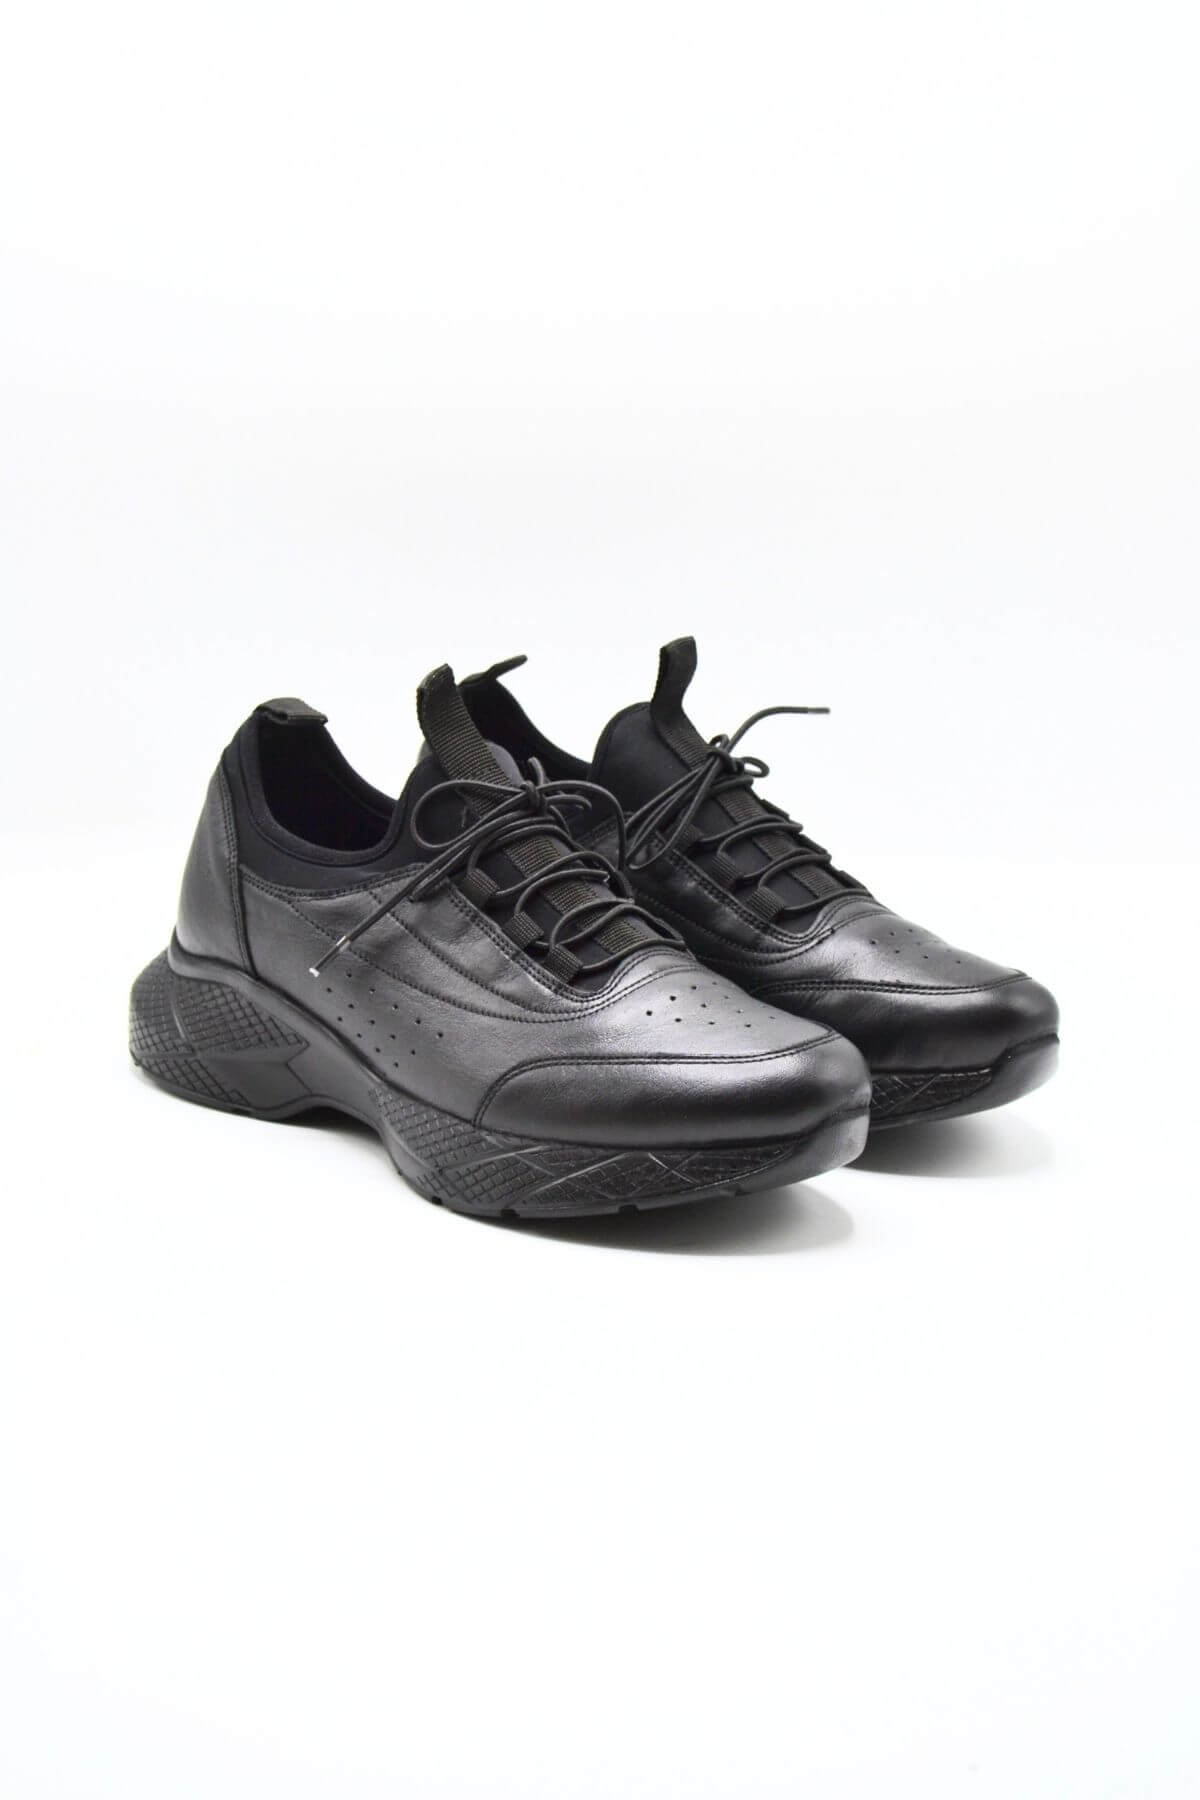 Kadın Airflow Deri Sneakers Siyah 2216603Y